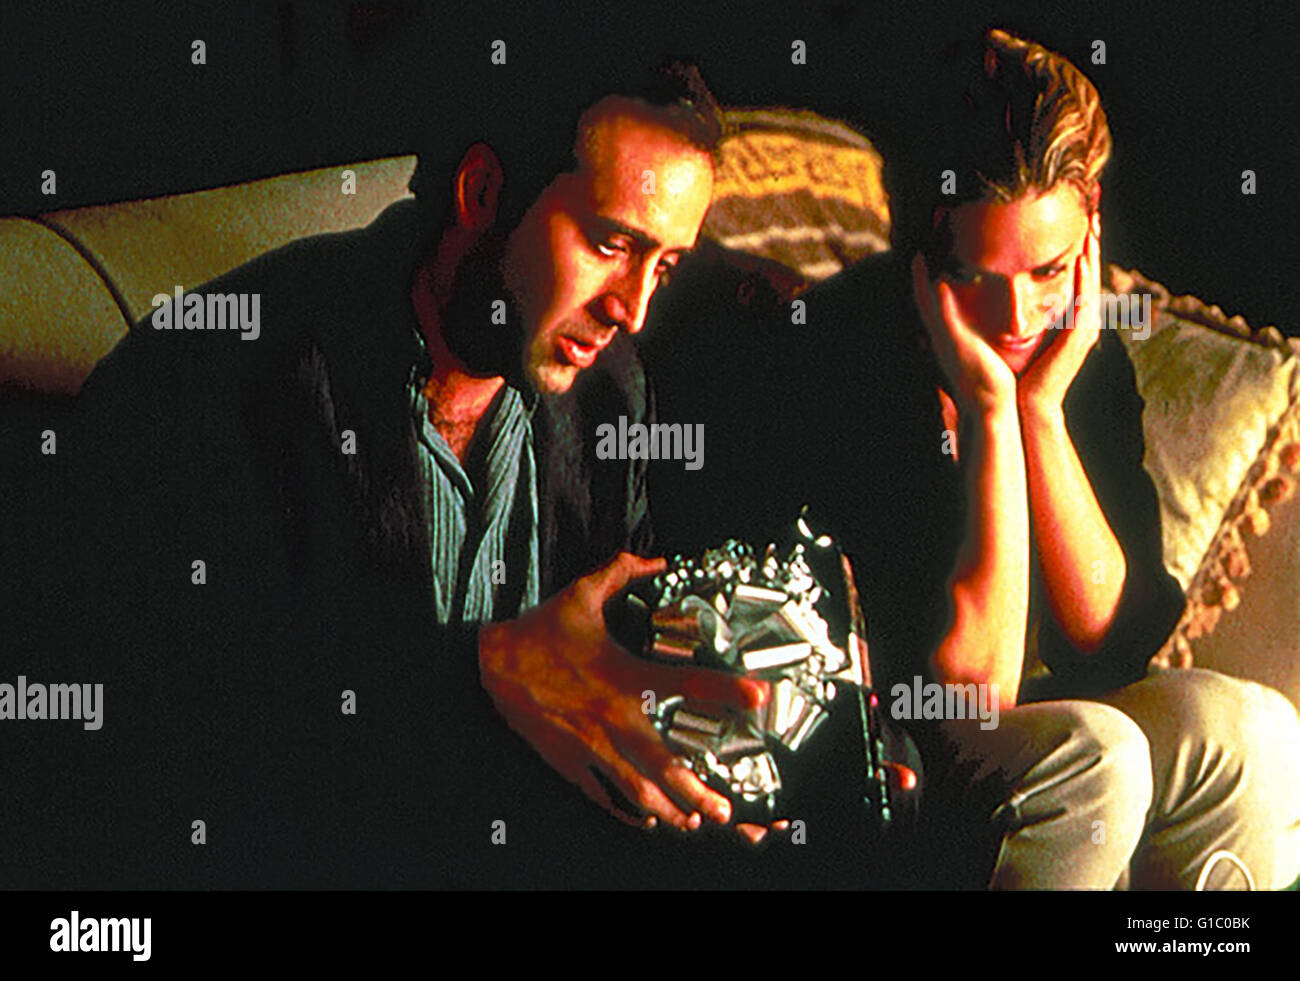 Leaving Las Vegas / Nicolas Cage,|Namen v.l.n.r.: Nicolas Cage / Elisabeth Shue| Stock Photo